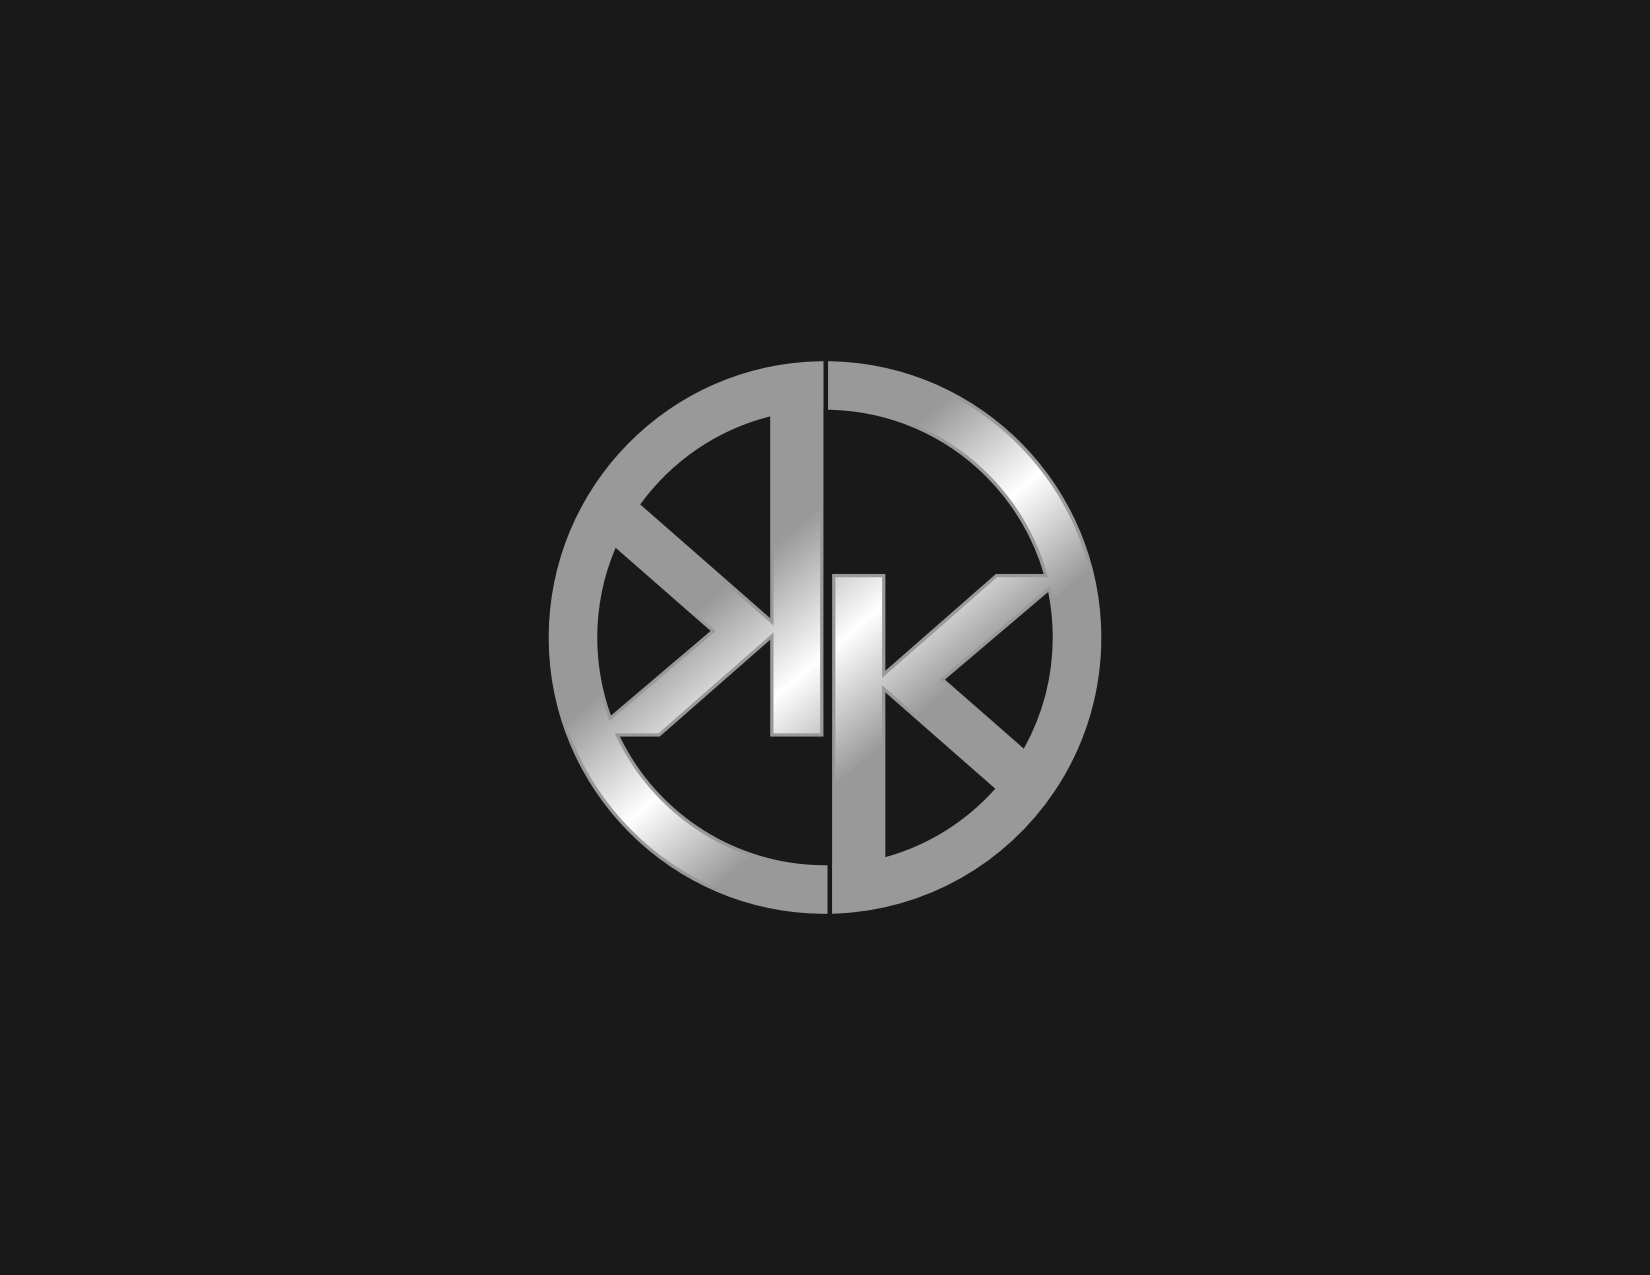 Kk Logo - Sribu: Logo Design - Logo Design for KK